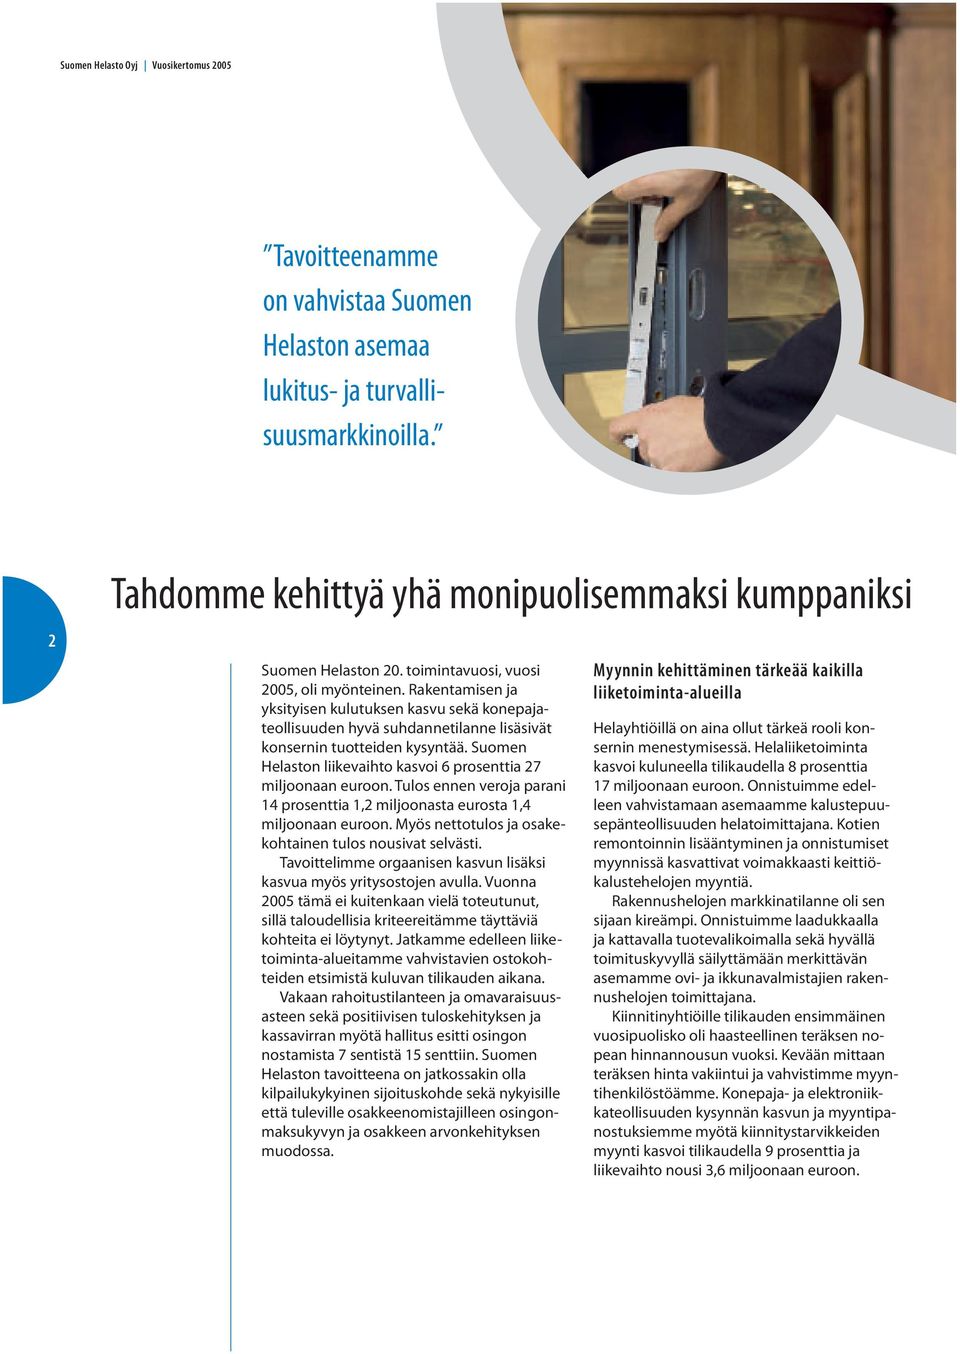 Suomen Helaston liikevaihto kasvoi 6 prosenttia 27 miljoonaan euroon. Tulos ennen veroja parani 14 prosenttia 1,2 miljoonasta eurosta 1,4 miljoonaan euroon.